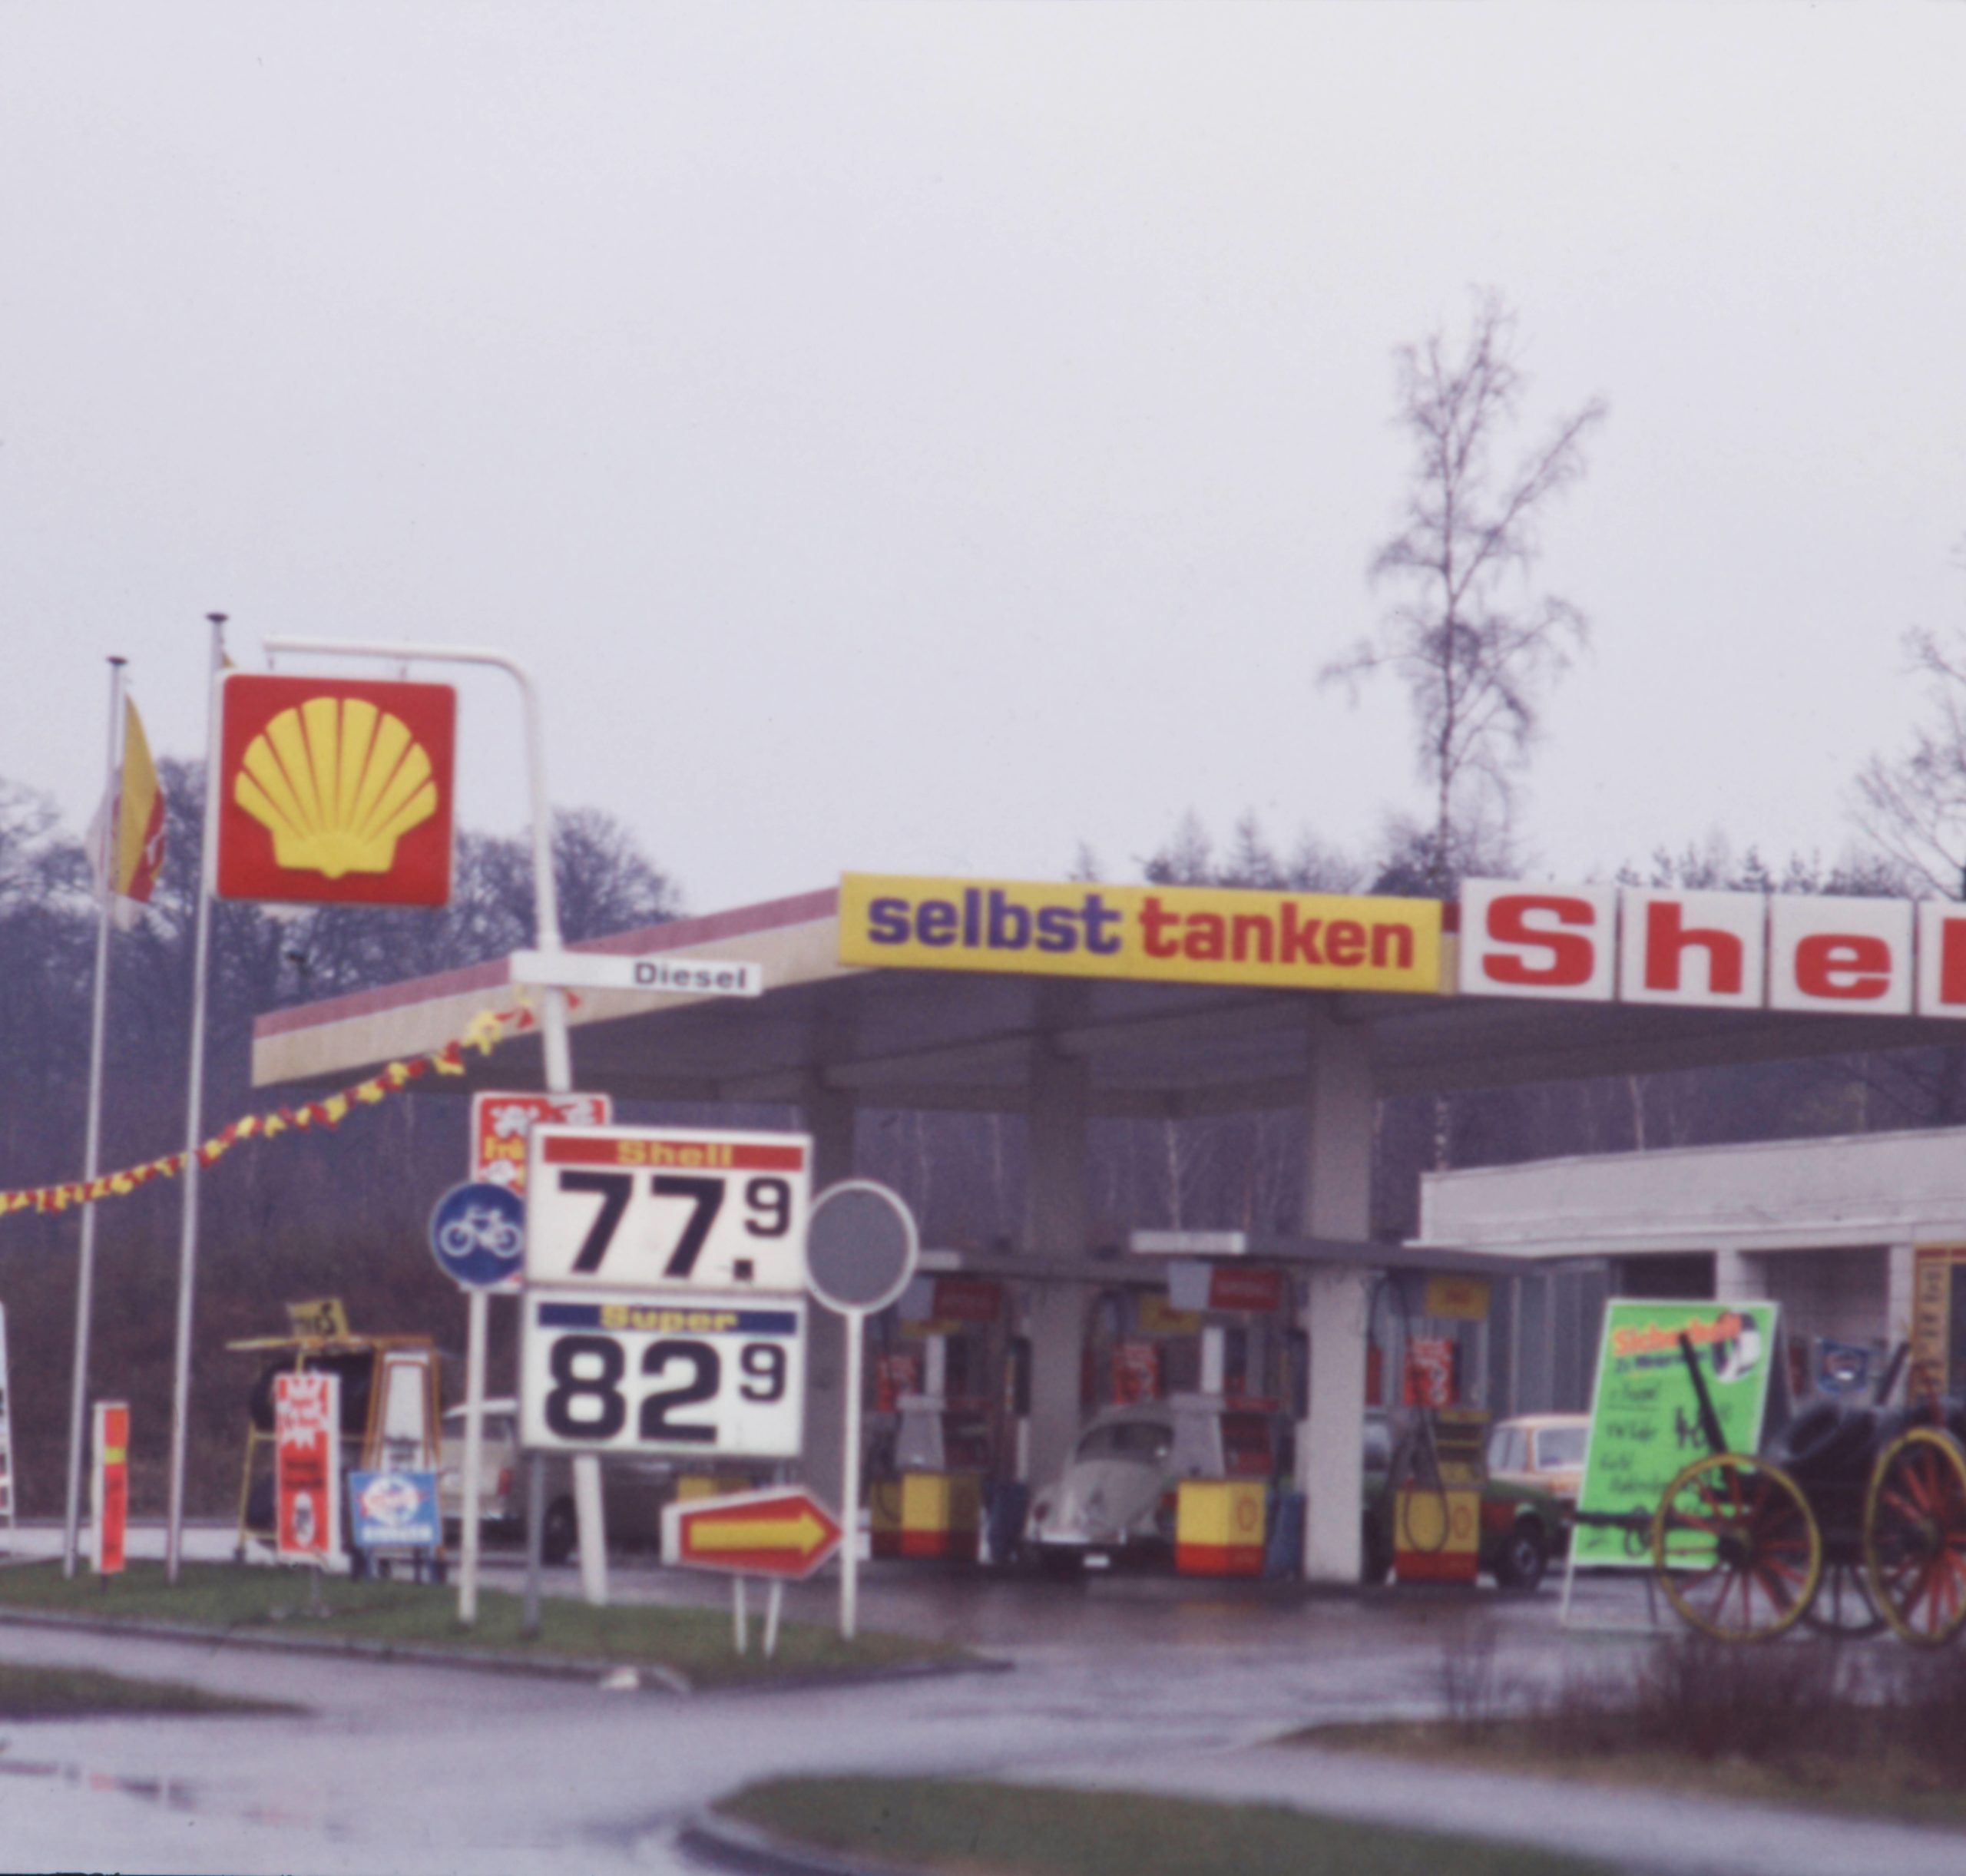 Shell-Tankstelle an der selbst getankt wurde, Ende der 1970er-Jahre. Foto: Imago/Serienlicht